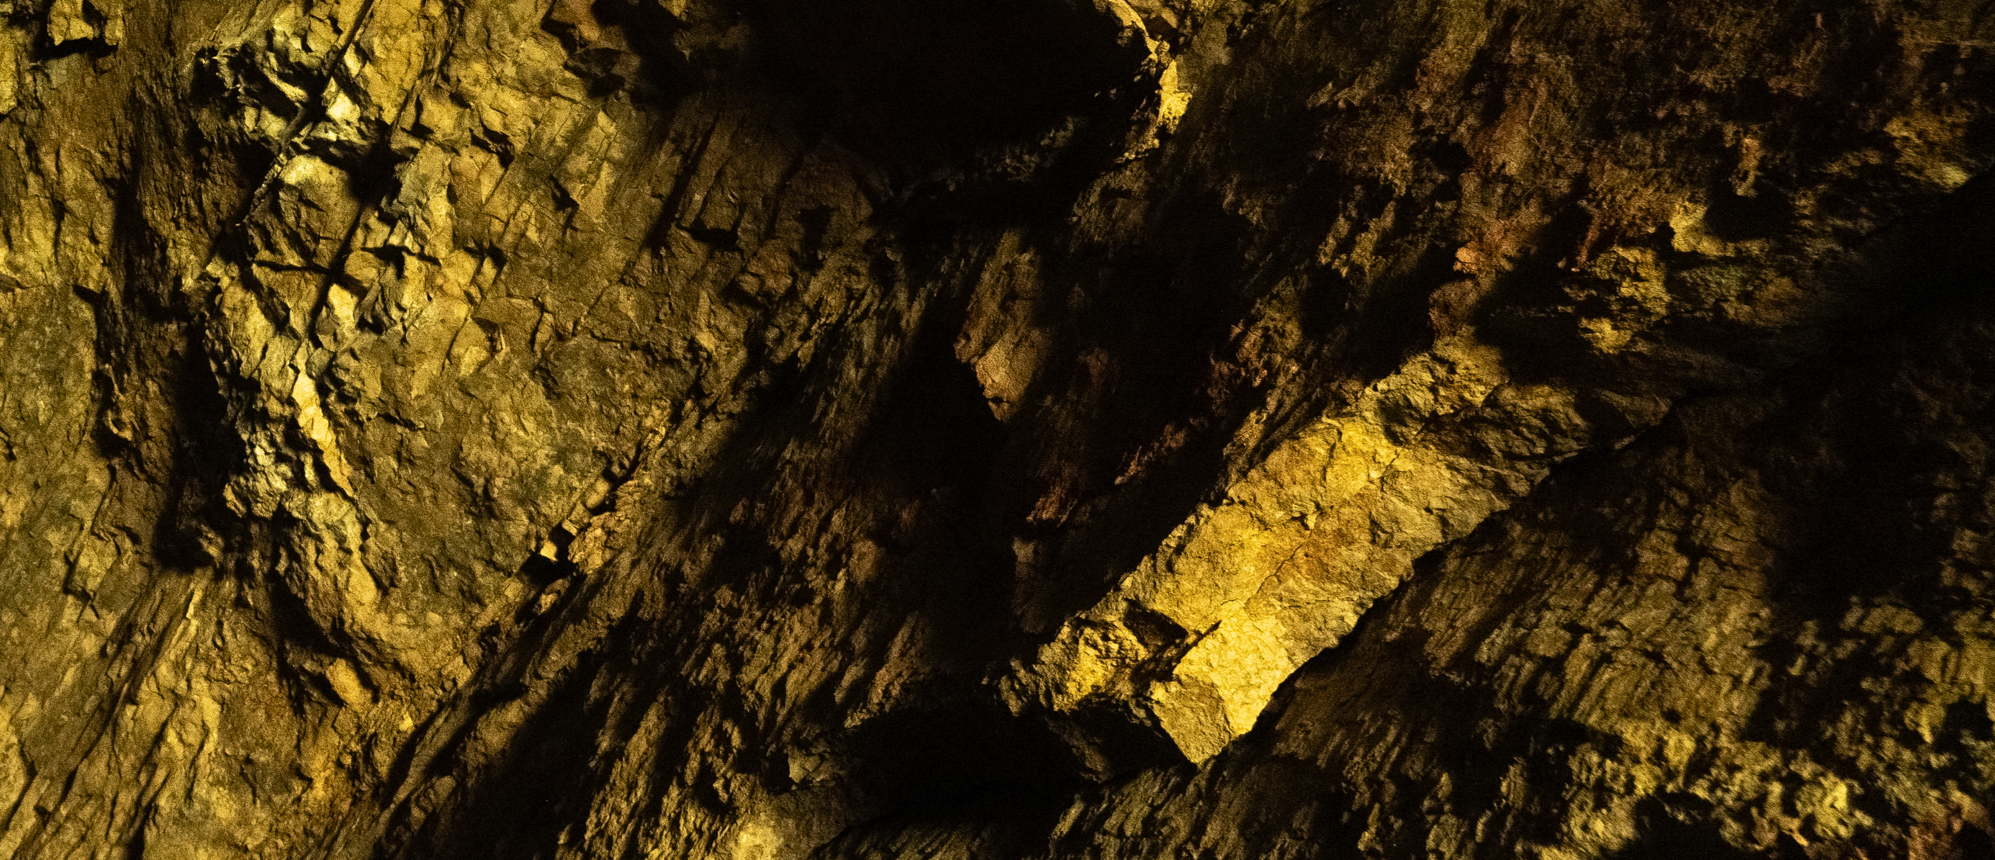 Kalksteengrot grotte des Faux Monnayeurs Vallée de la Loue wandelen